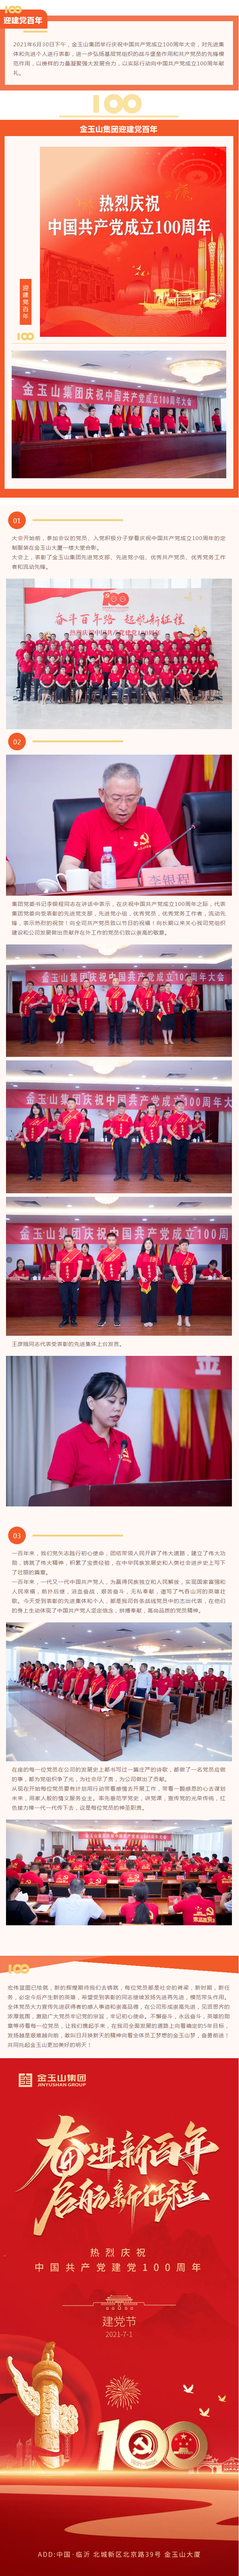 金玉山集團舉行慶祝中國共產黨成立100周年大會11.jpg